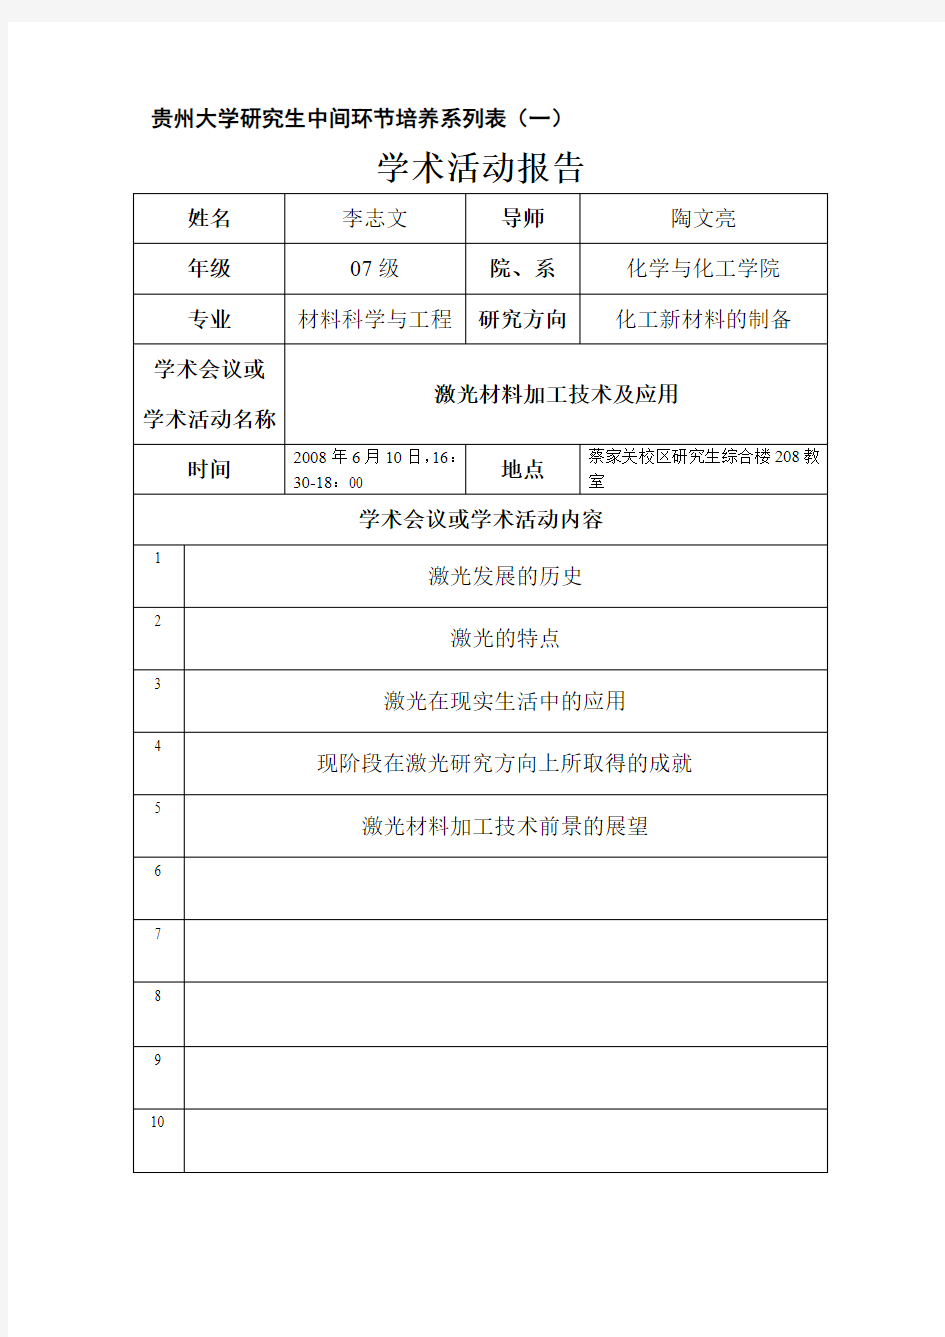 贵州大学研究生中间环节培养系列表